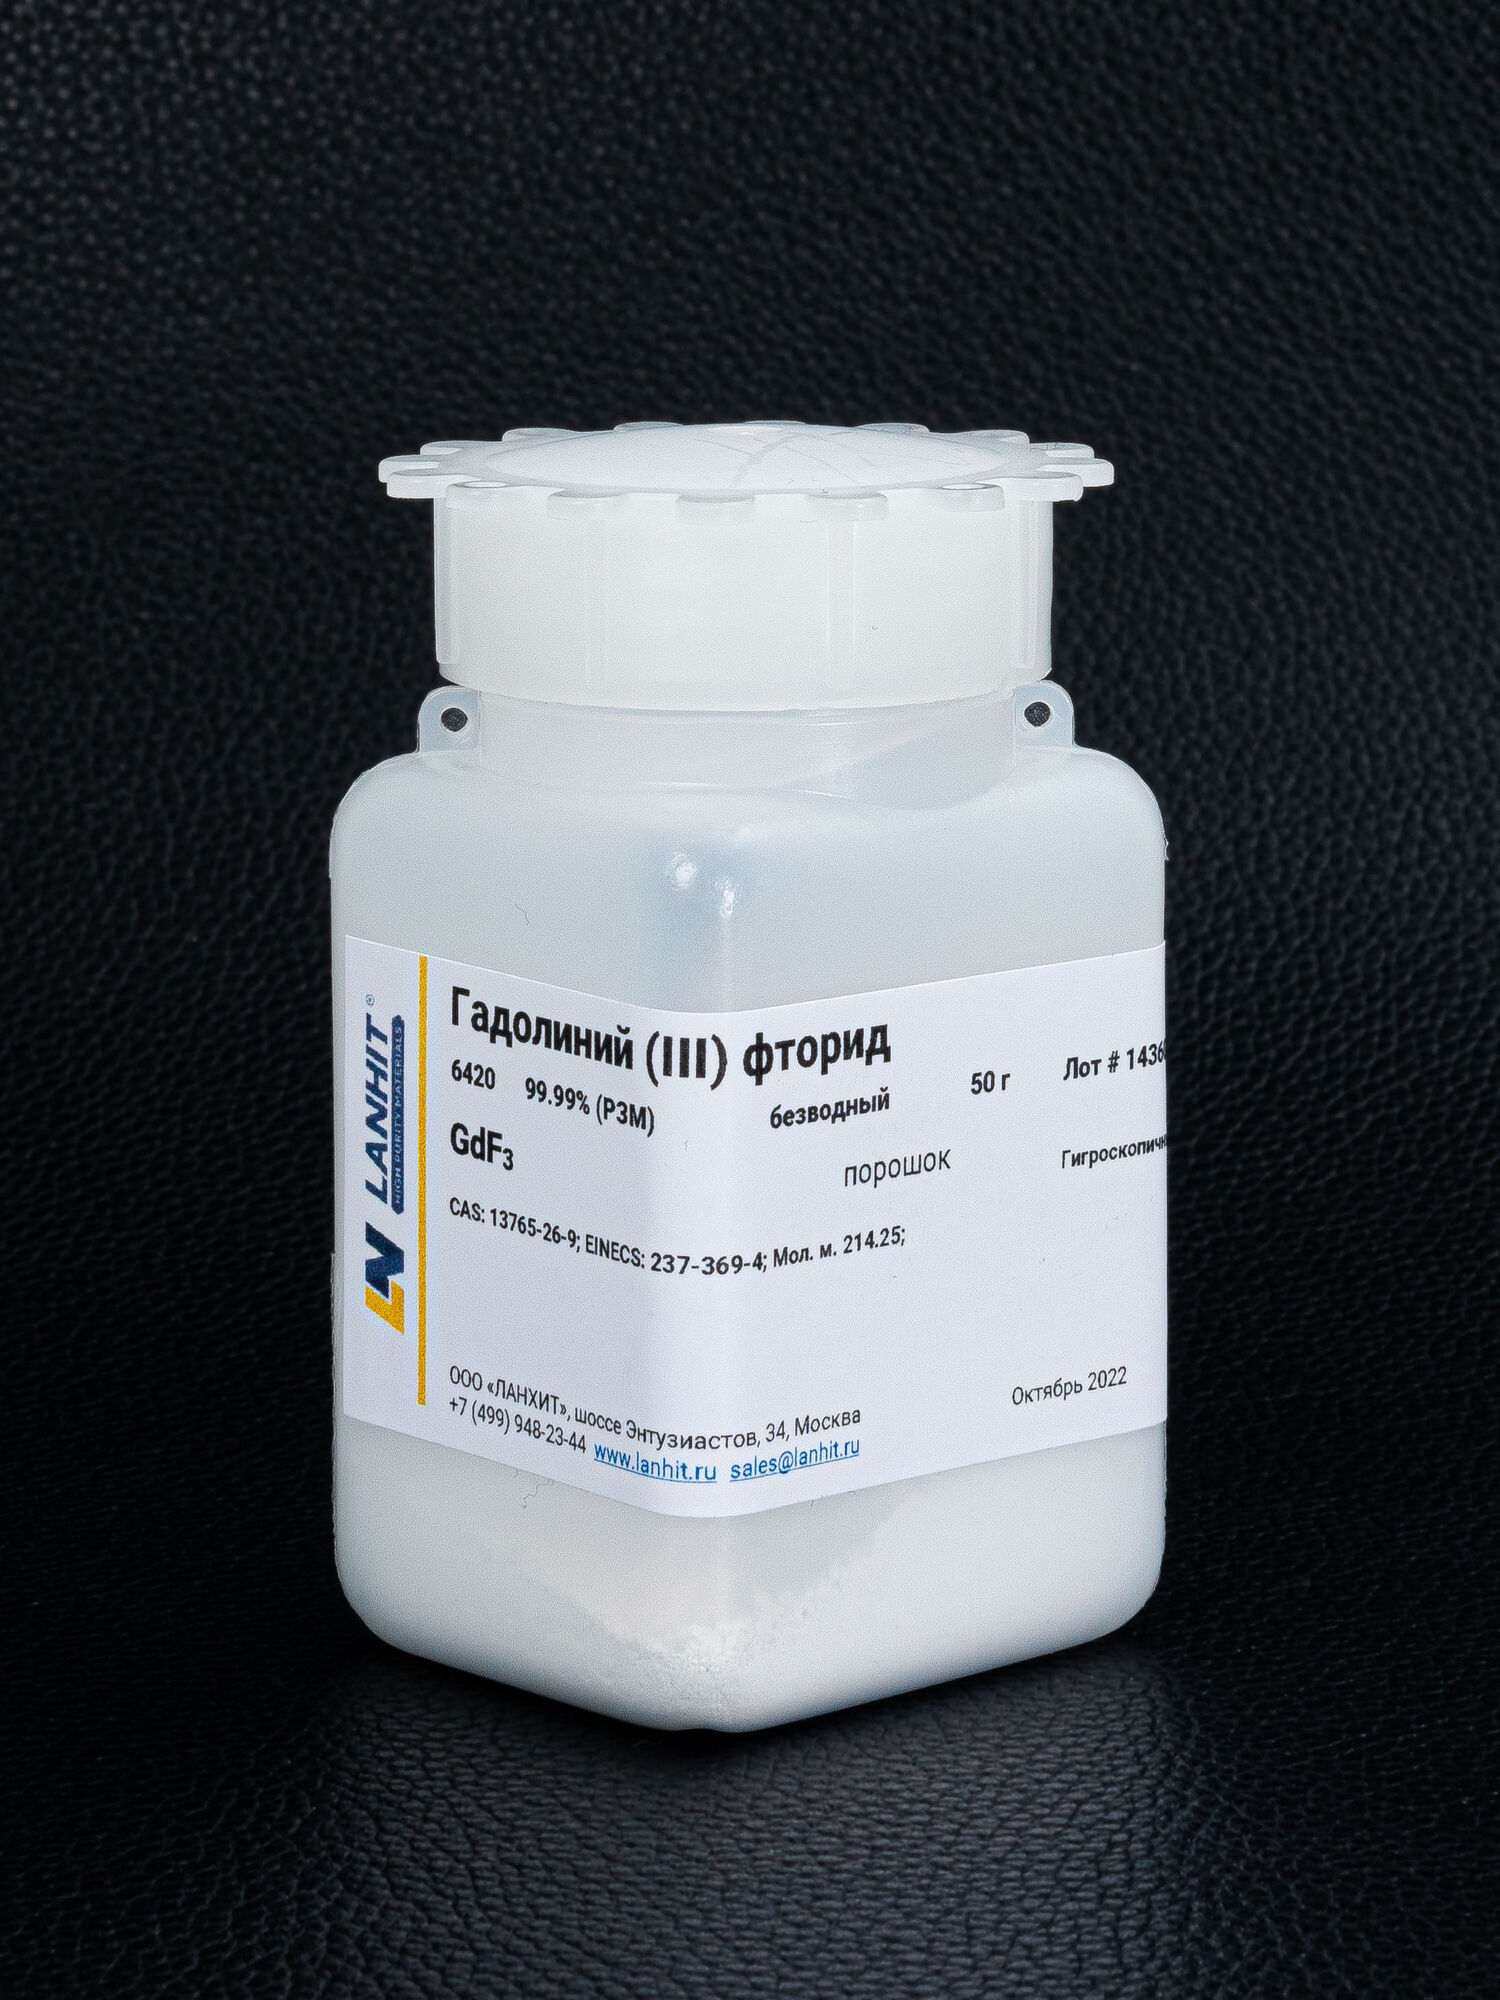 Гадолиний (III) фторид, безводный, 99.99% (РЗМ), порошок